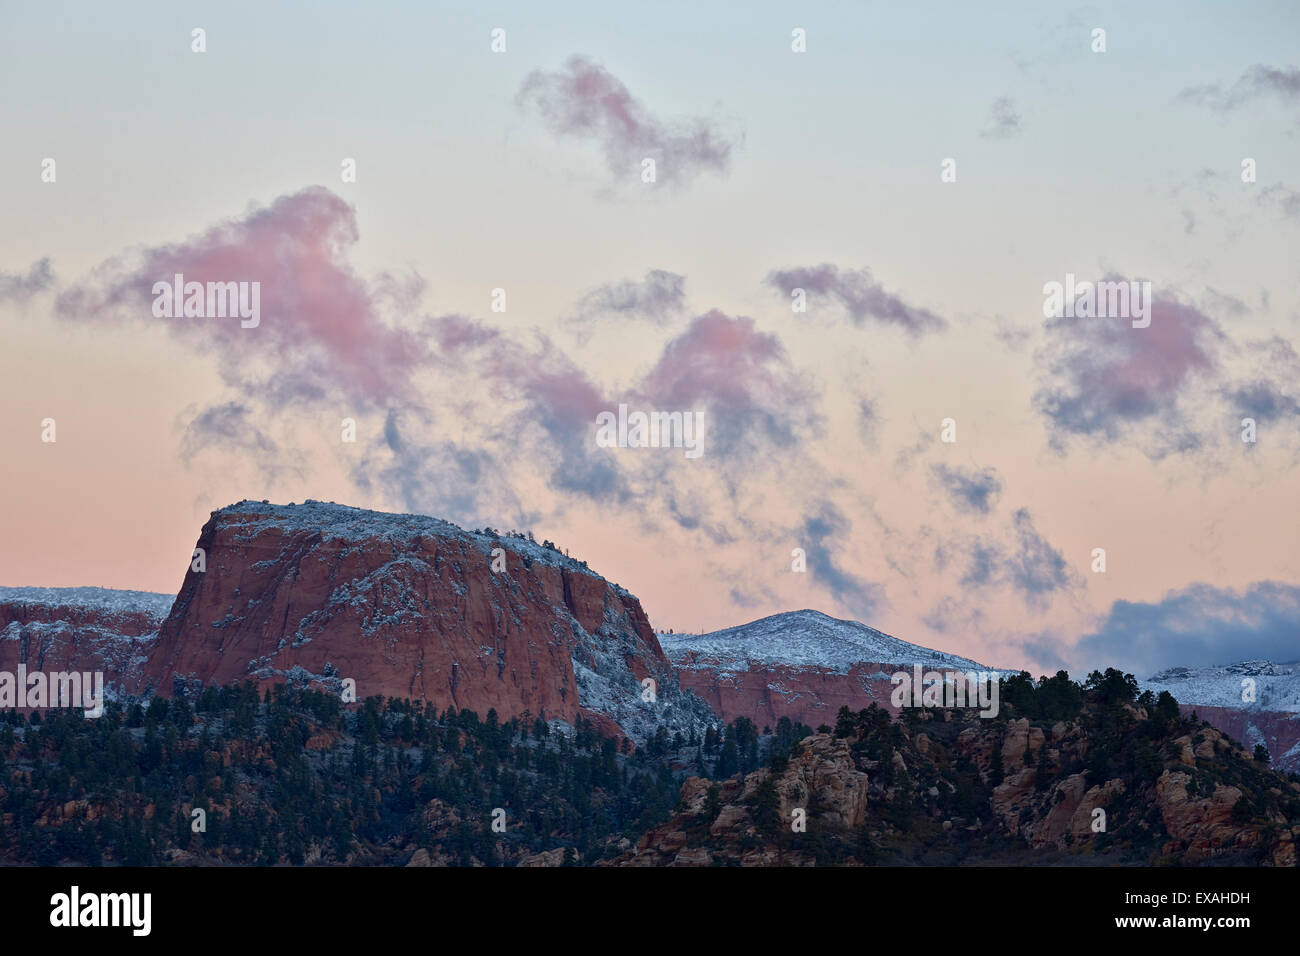 Nuages rose à l'aube sur des formations de grès recouvert d'une mince couche de neige, Zion National Park, Utah, United States of America Banque D'Images